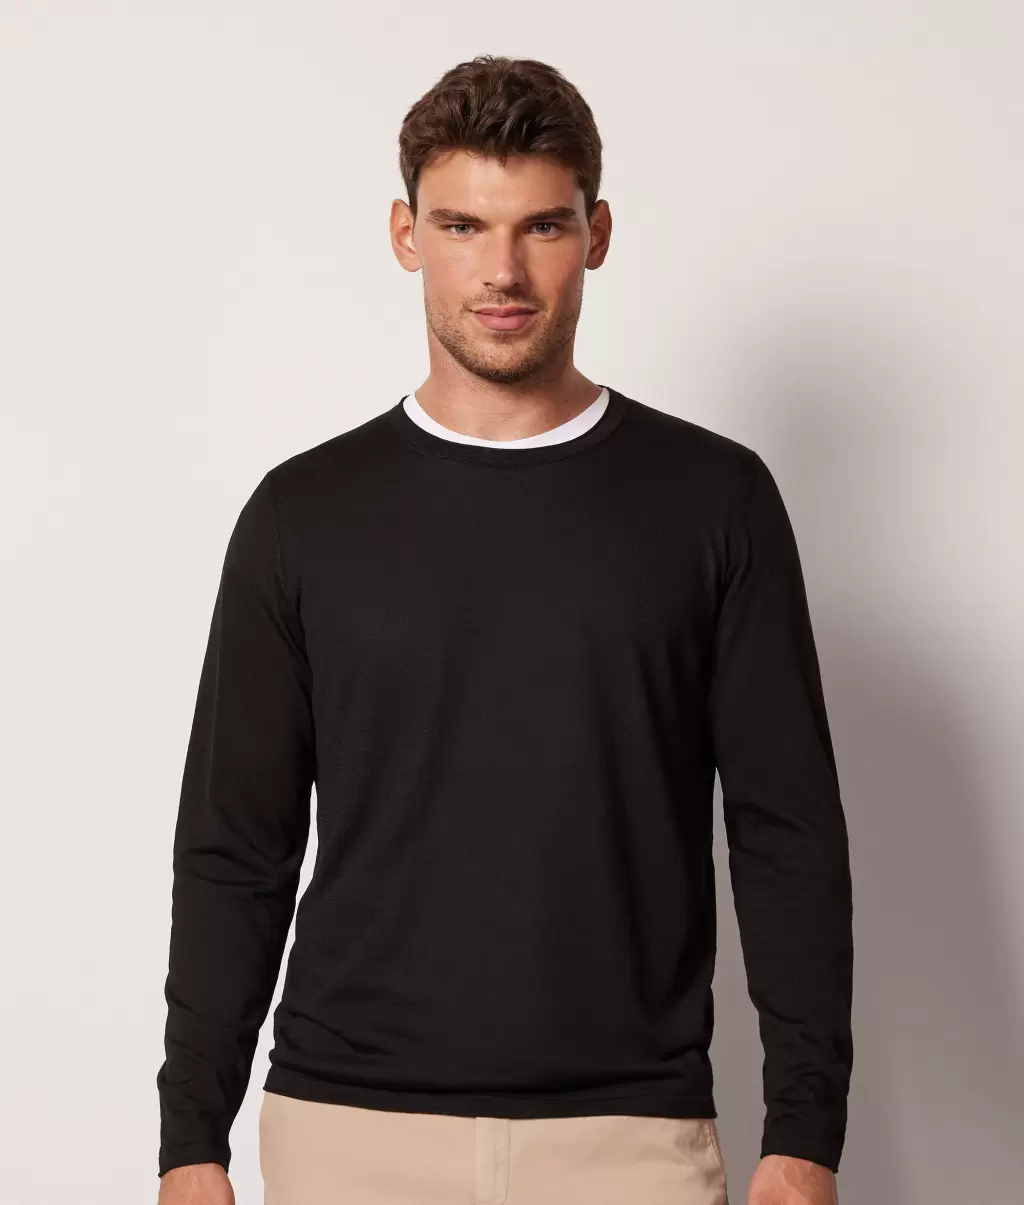 Black Falconeri Swetry Z Okrągłym Dekoltem Mężczyzna Sweter Z Jedwabiu I Bawełny - 1